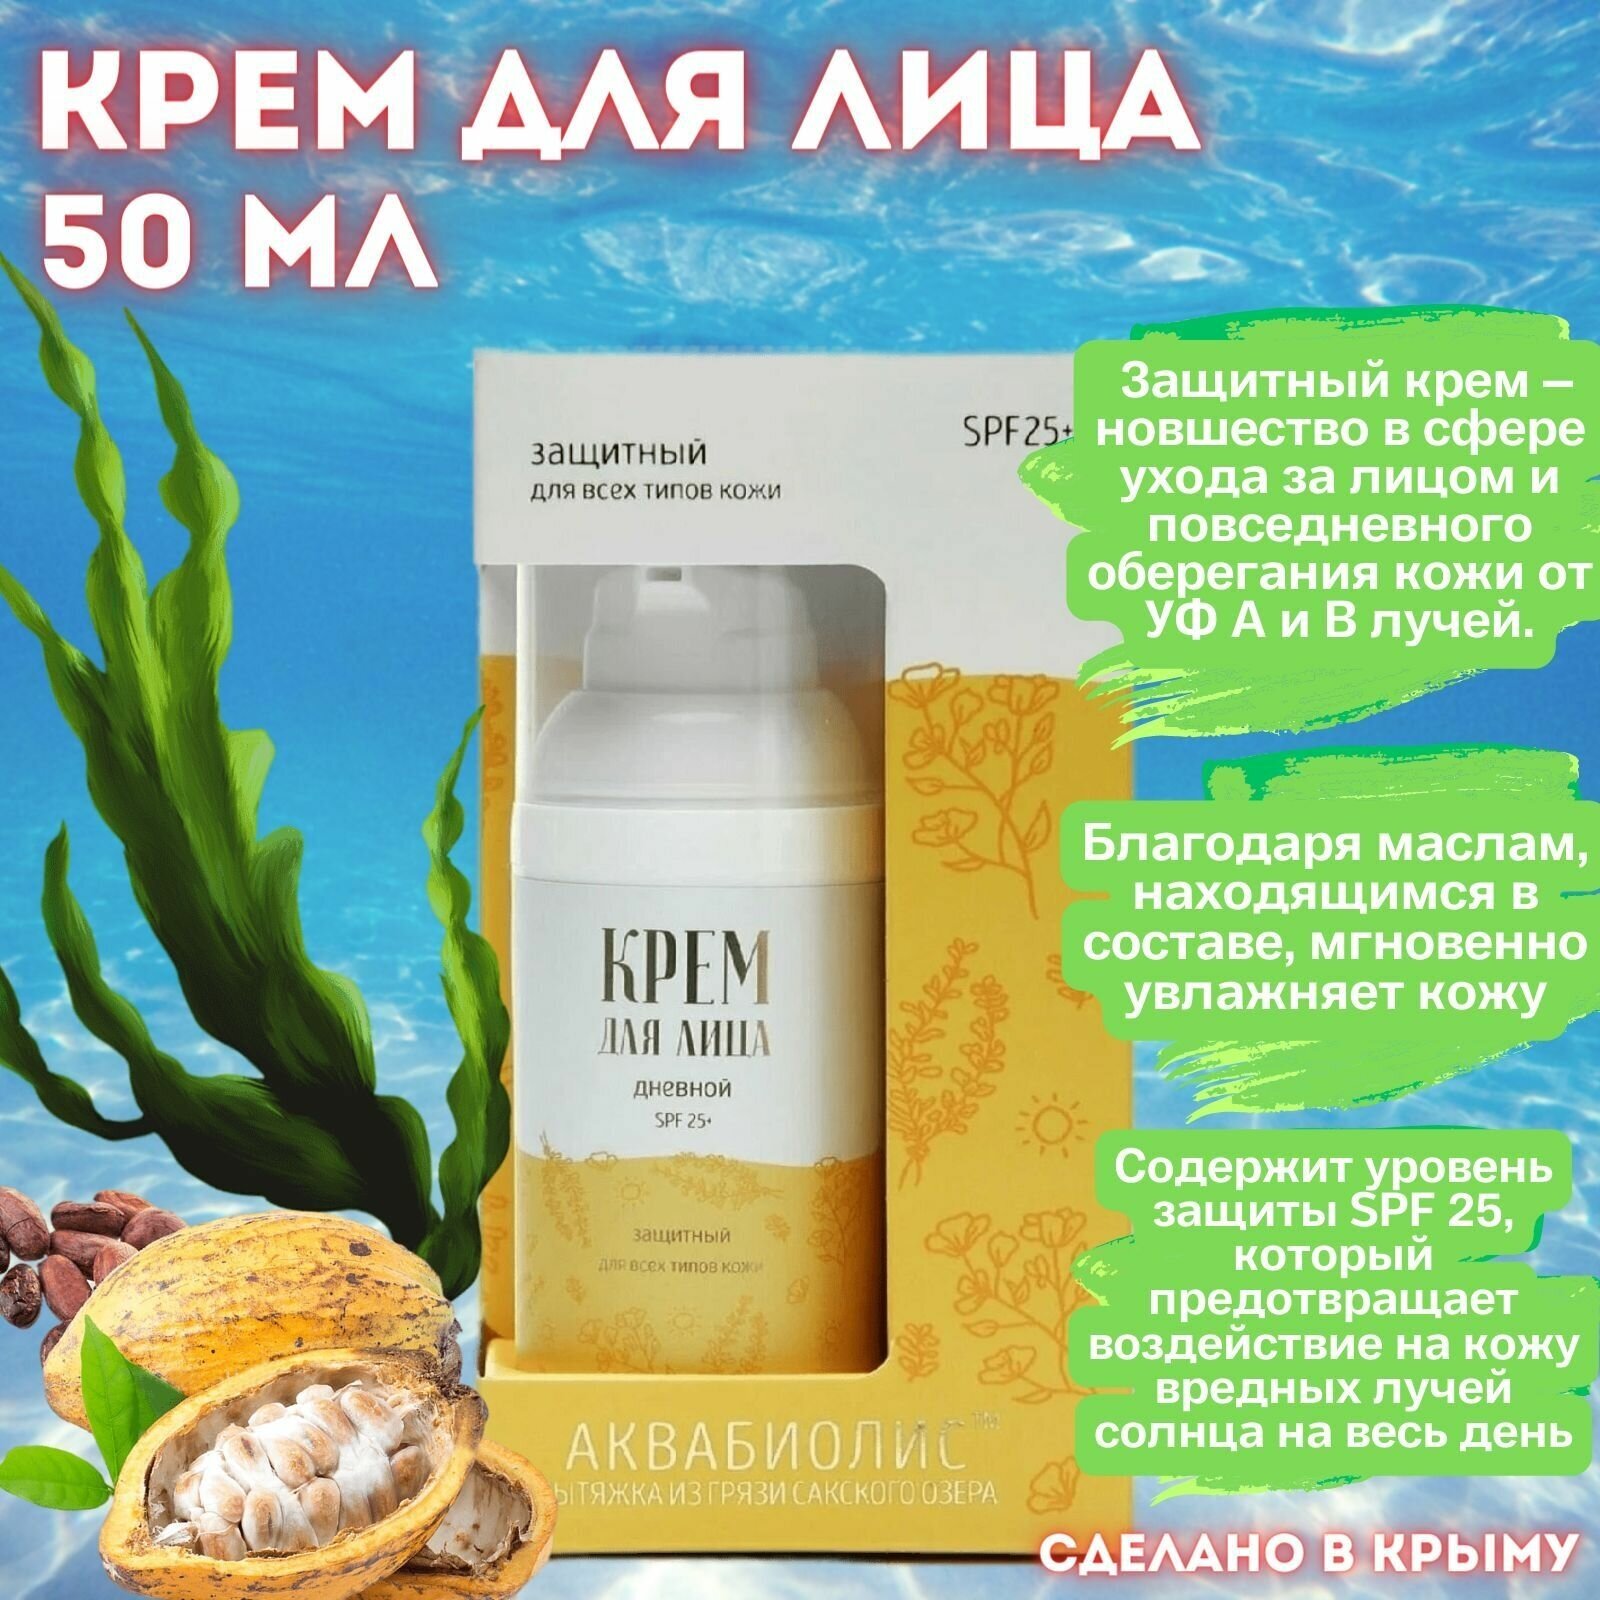 Сакские грязи, Дневной крем для лица, Защитный SPF 25 аквабиолис для всех типов кожи, Крымская натуральная косметика, 50 мл